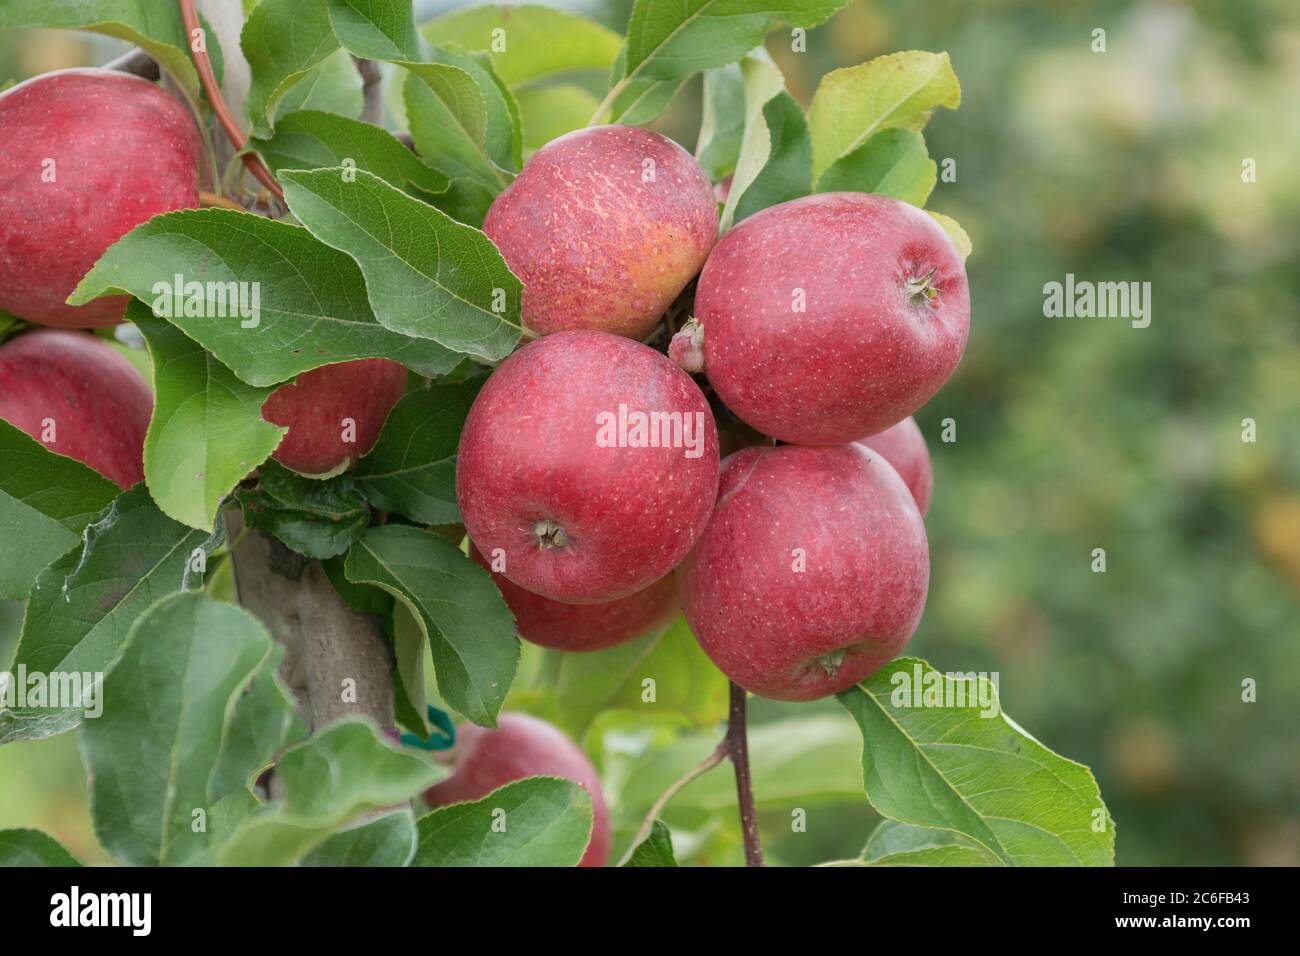 Apfel, Malus domestica Releika, Apple, Malus domestica Releika Stock Photo